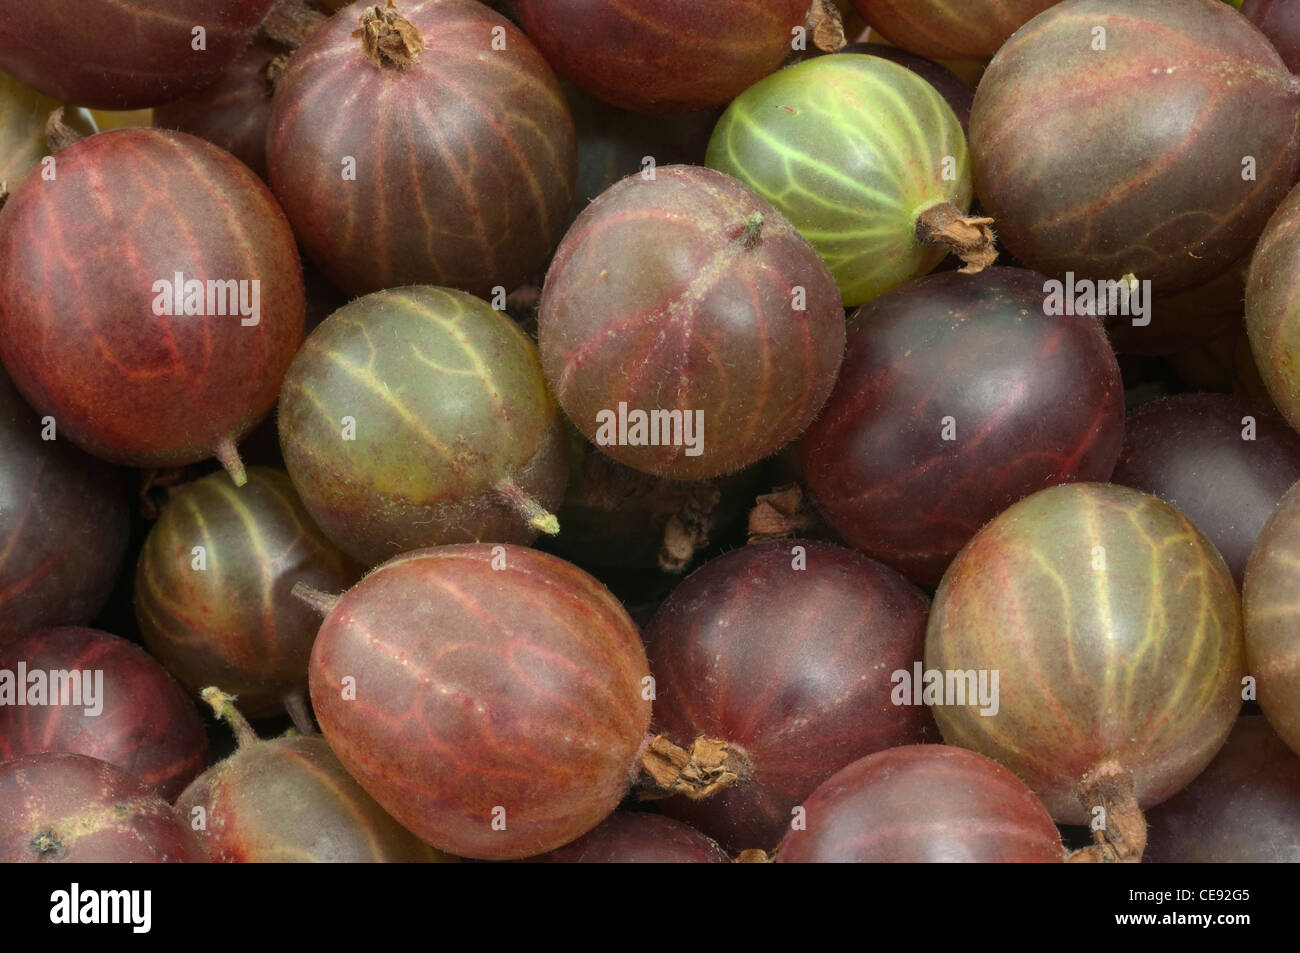 Stachelbeere (Ribes Uva-Crispa), Beeren von verschiedenen Sorten, Studio Bild. Stockfoto